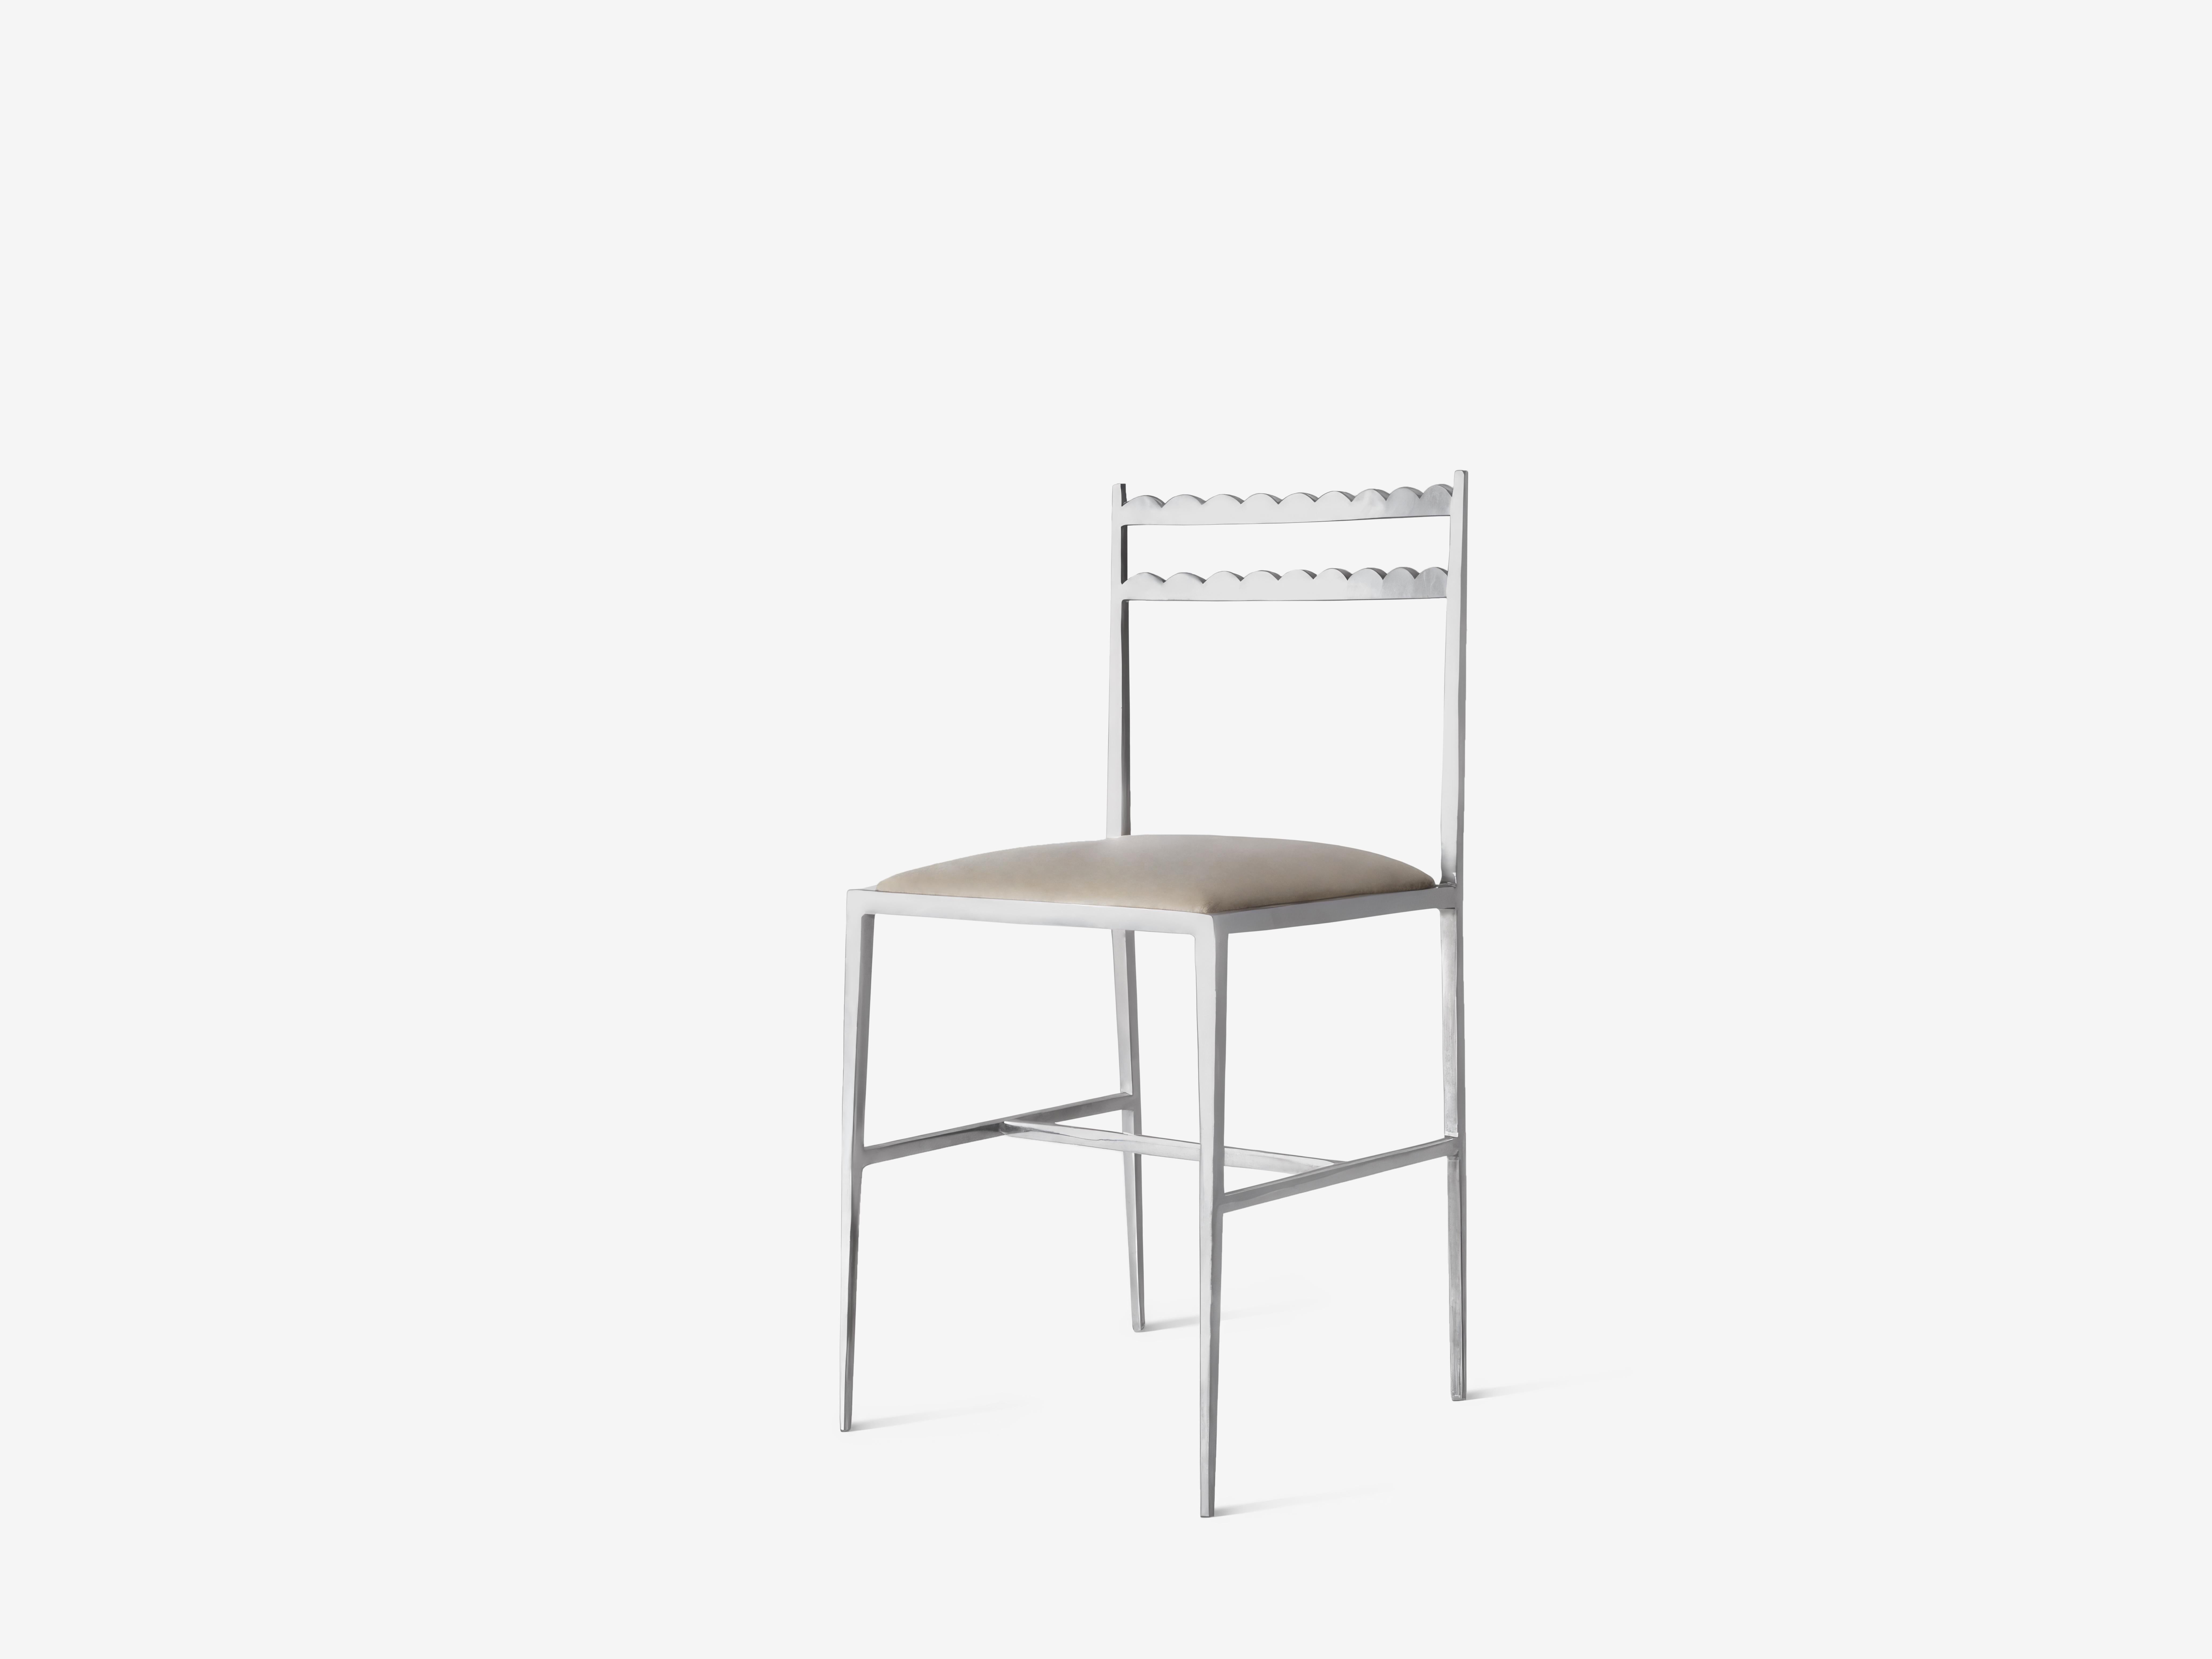 Ensemble de 2 chaises de salle à manger Lupita par OHLA STUDIO
Dimensions : D 40 x L 40 x H 83 cm 
MATERIAL : Aluminium poli.
Poids : 8.5 kg

Cette chaise s'inspire des bancs mexicains traditionnels du XIXe siècle, sculptés de festons, qui meublent